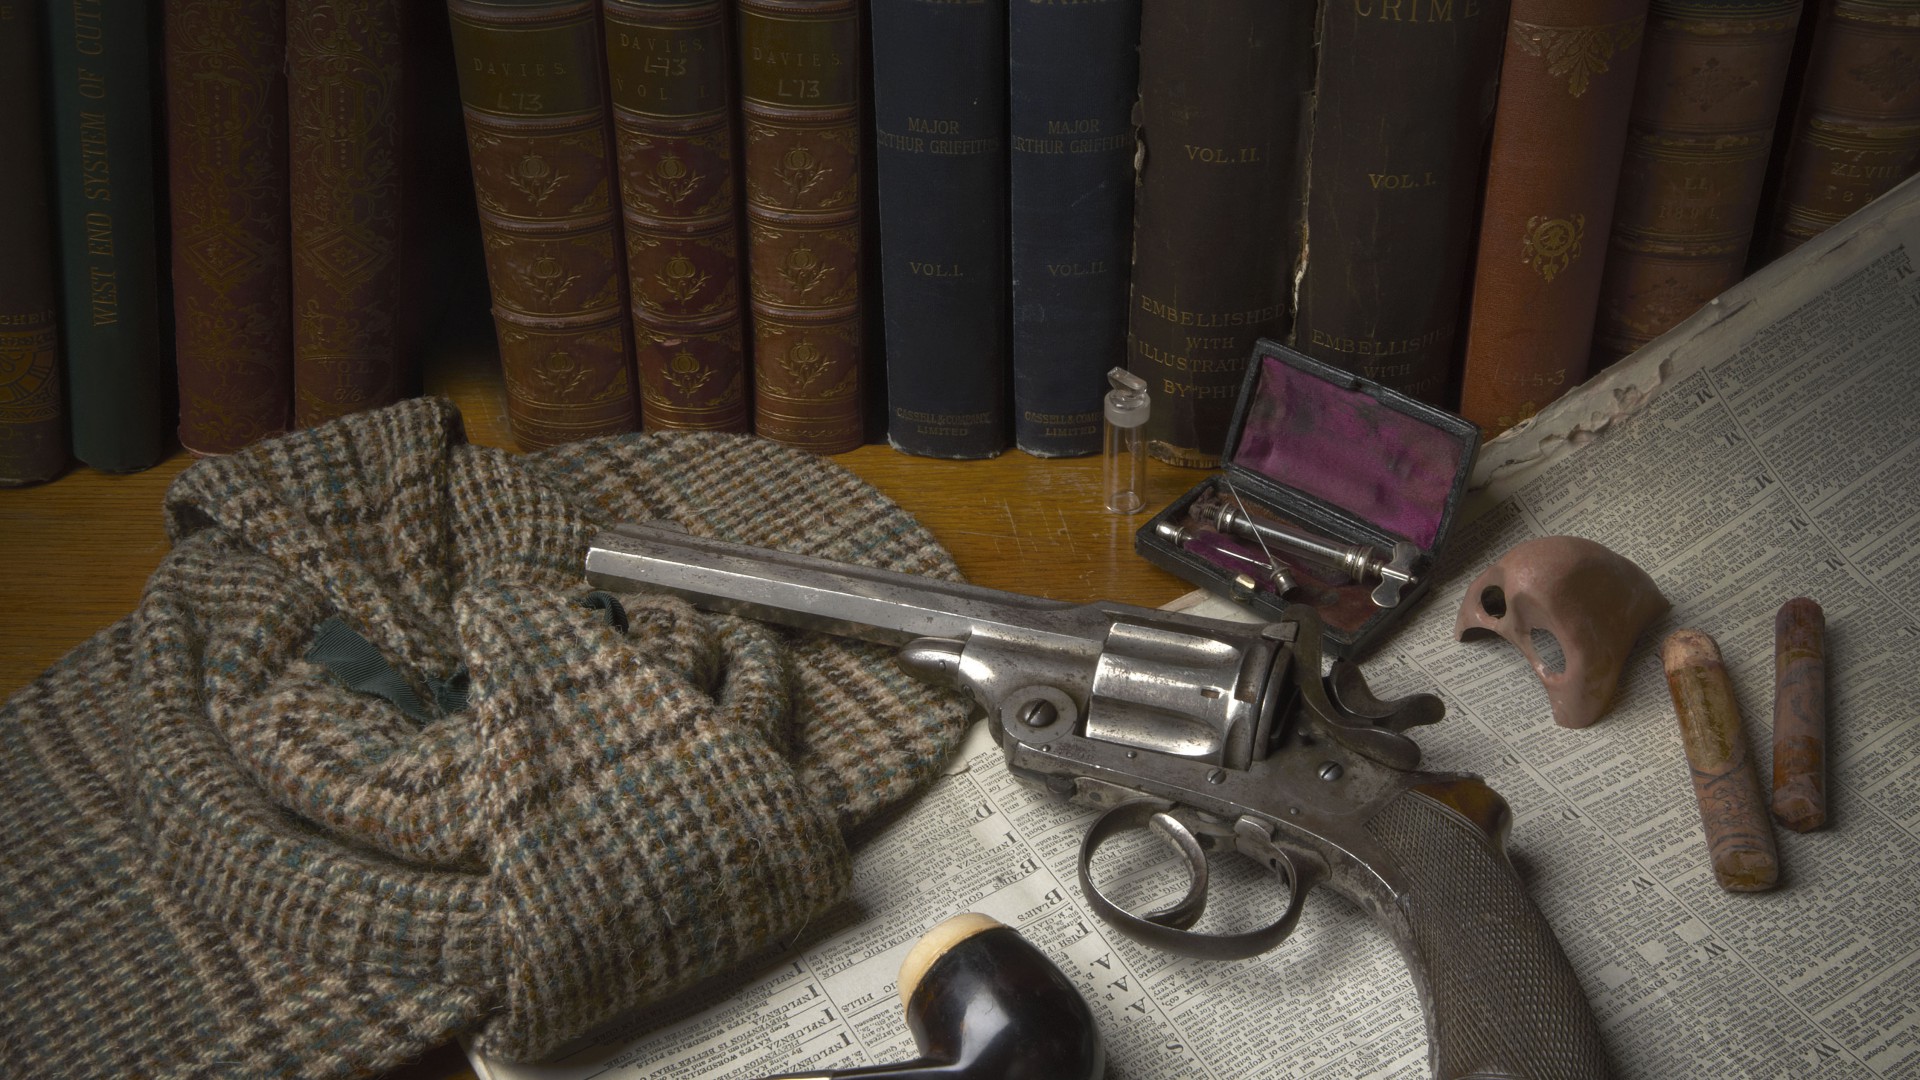 револьвер, античный револьвер, патроны, antique revolver, classic pistol, books, bullets, gunpowder (horizontal)